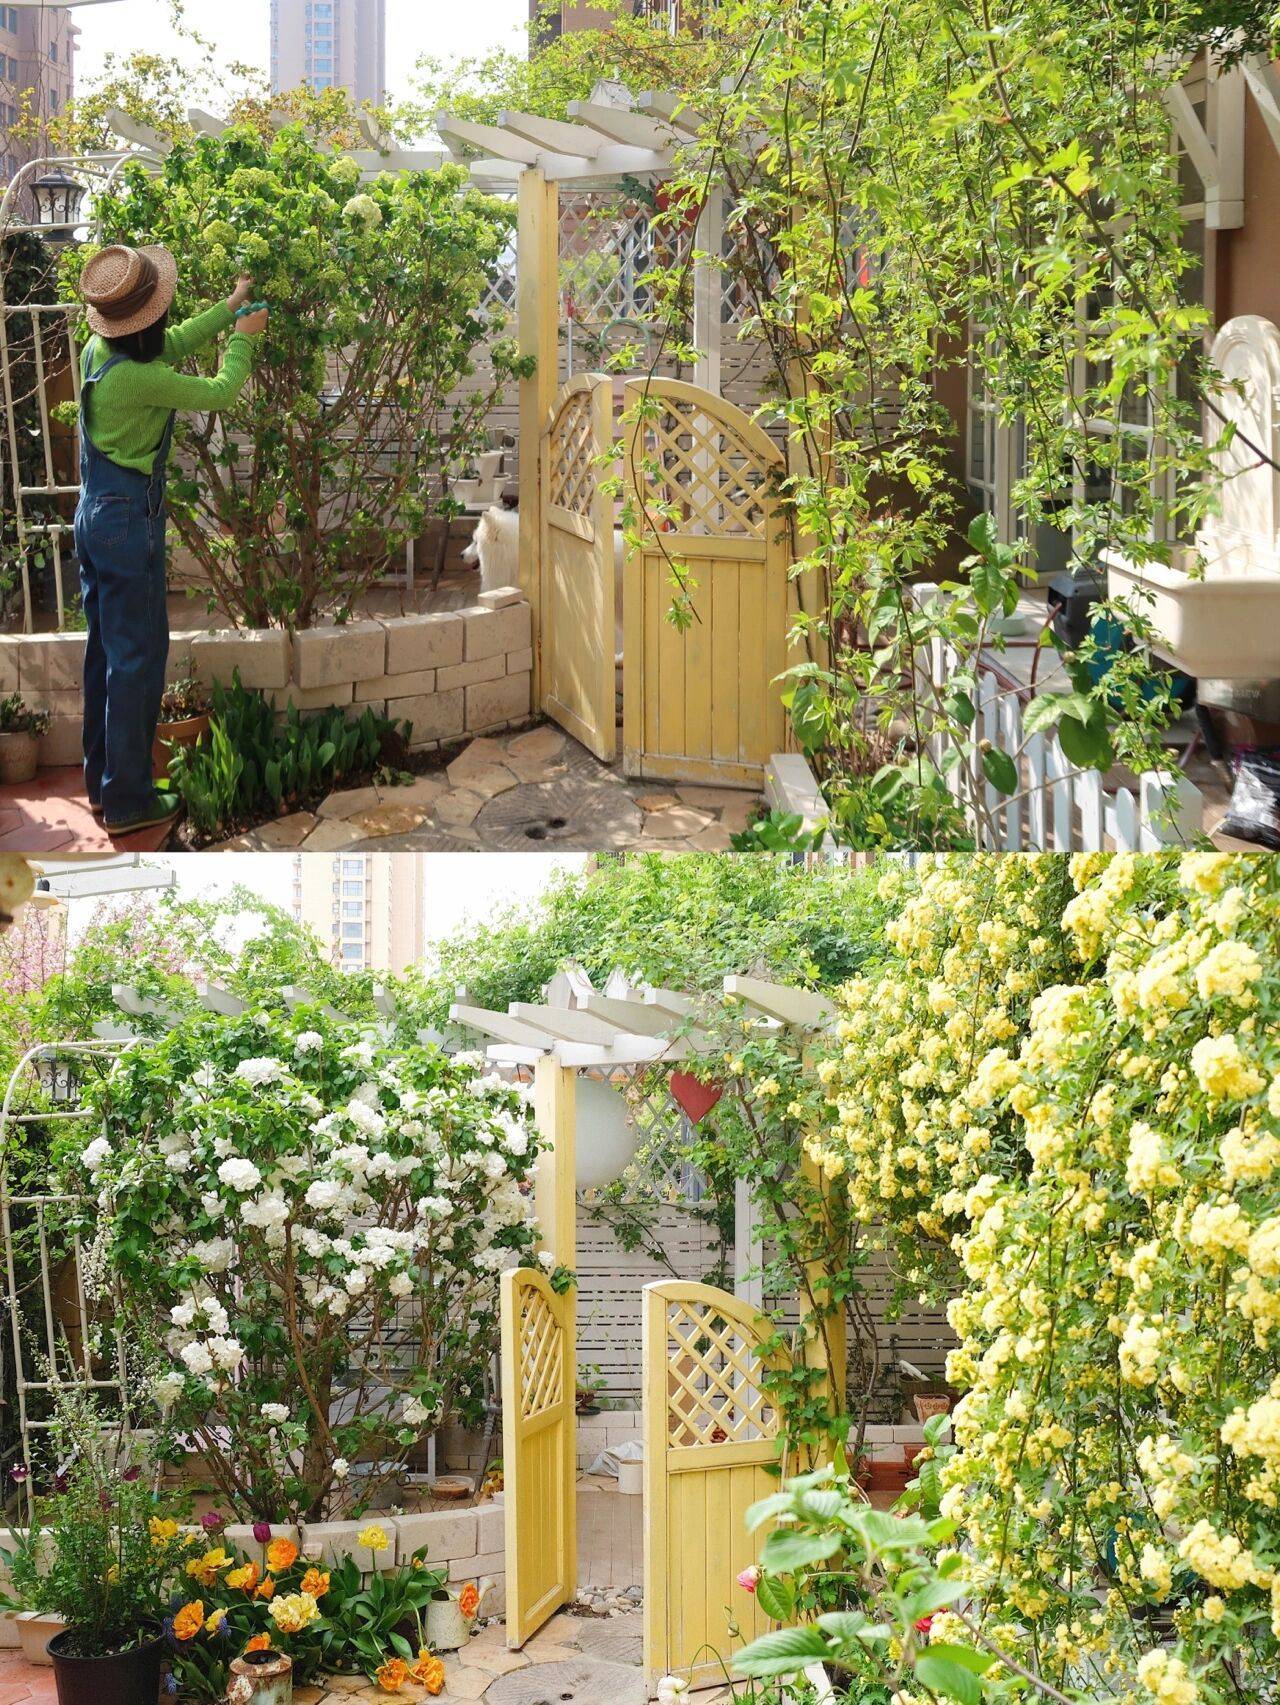 Khu vườn nhà: Không gian xanh tươi của khu vườn nhà như một chốn bình yên giữa lòng đô thị. Hãy cùng khám phá những điểm nhấn độc đáo và bốn mùa hoa phong phú được cập nhật trong hình ảnh.